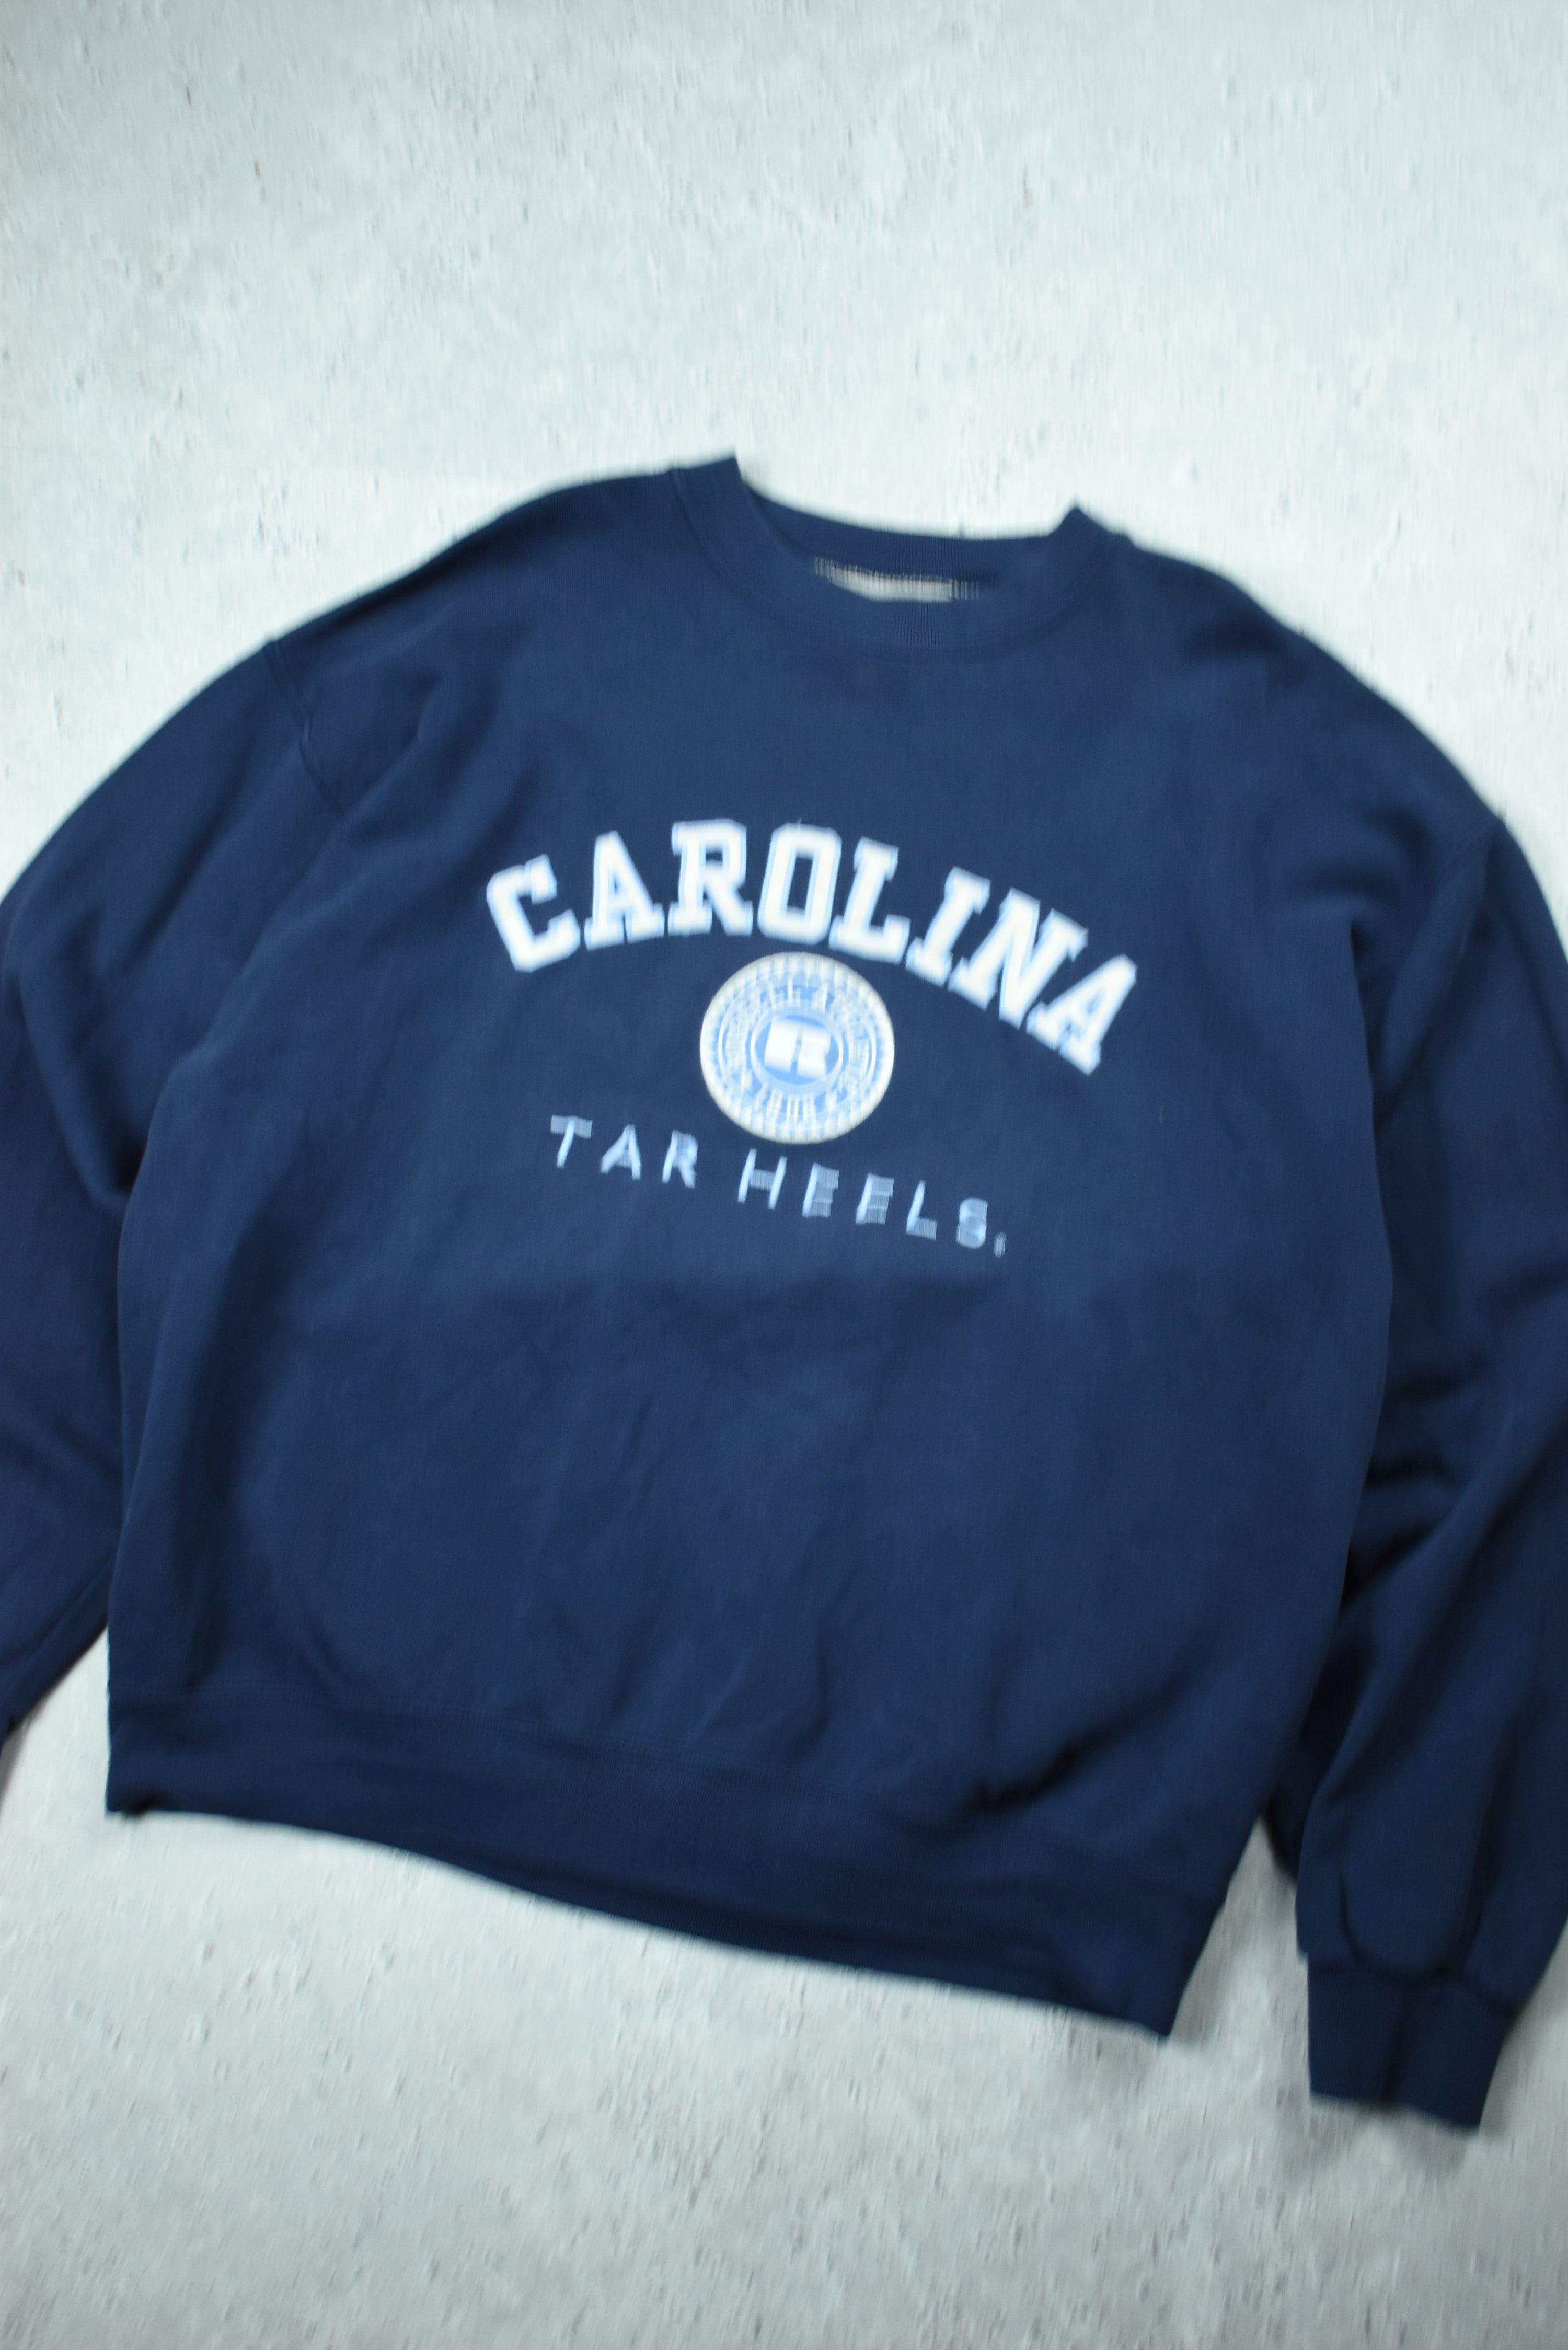 Vintage Russell Athletic Carolina Tar Heels Embroidery Sweatshirt Medium